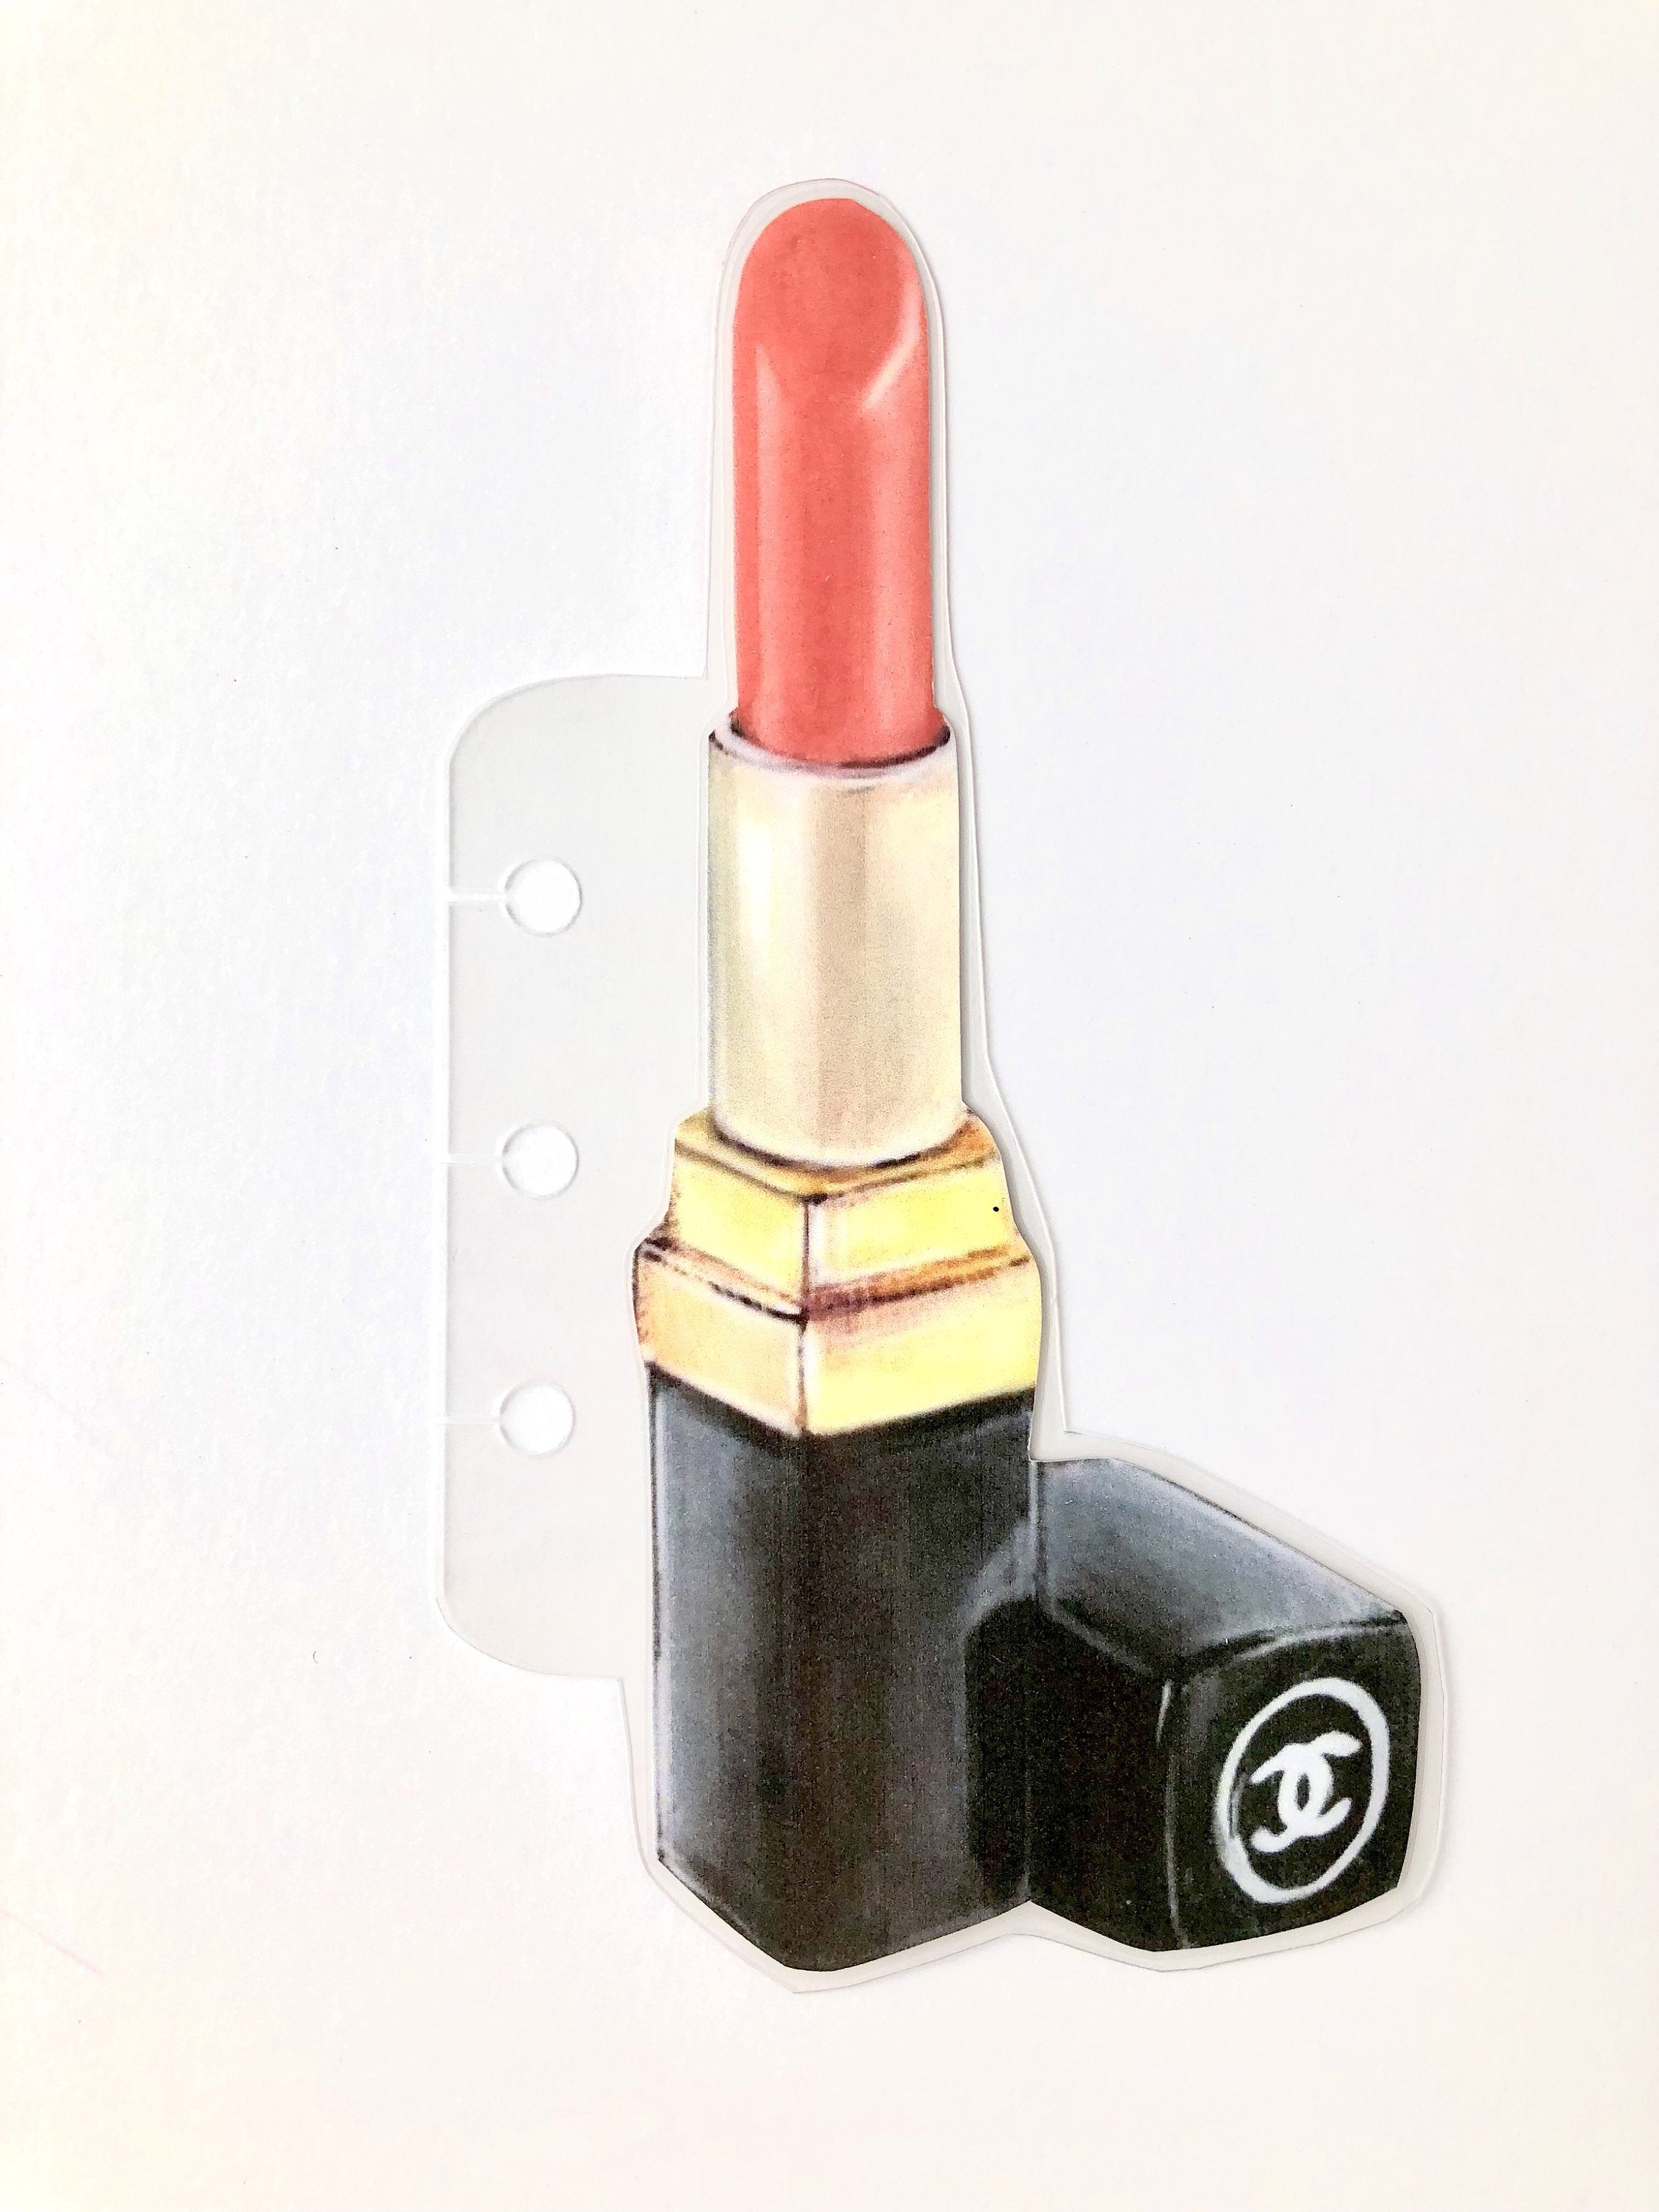 CHANEL, Accessories, Chanel Lipstick